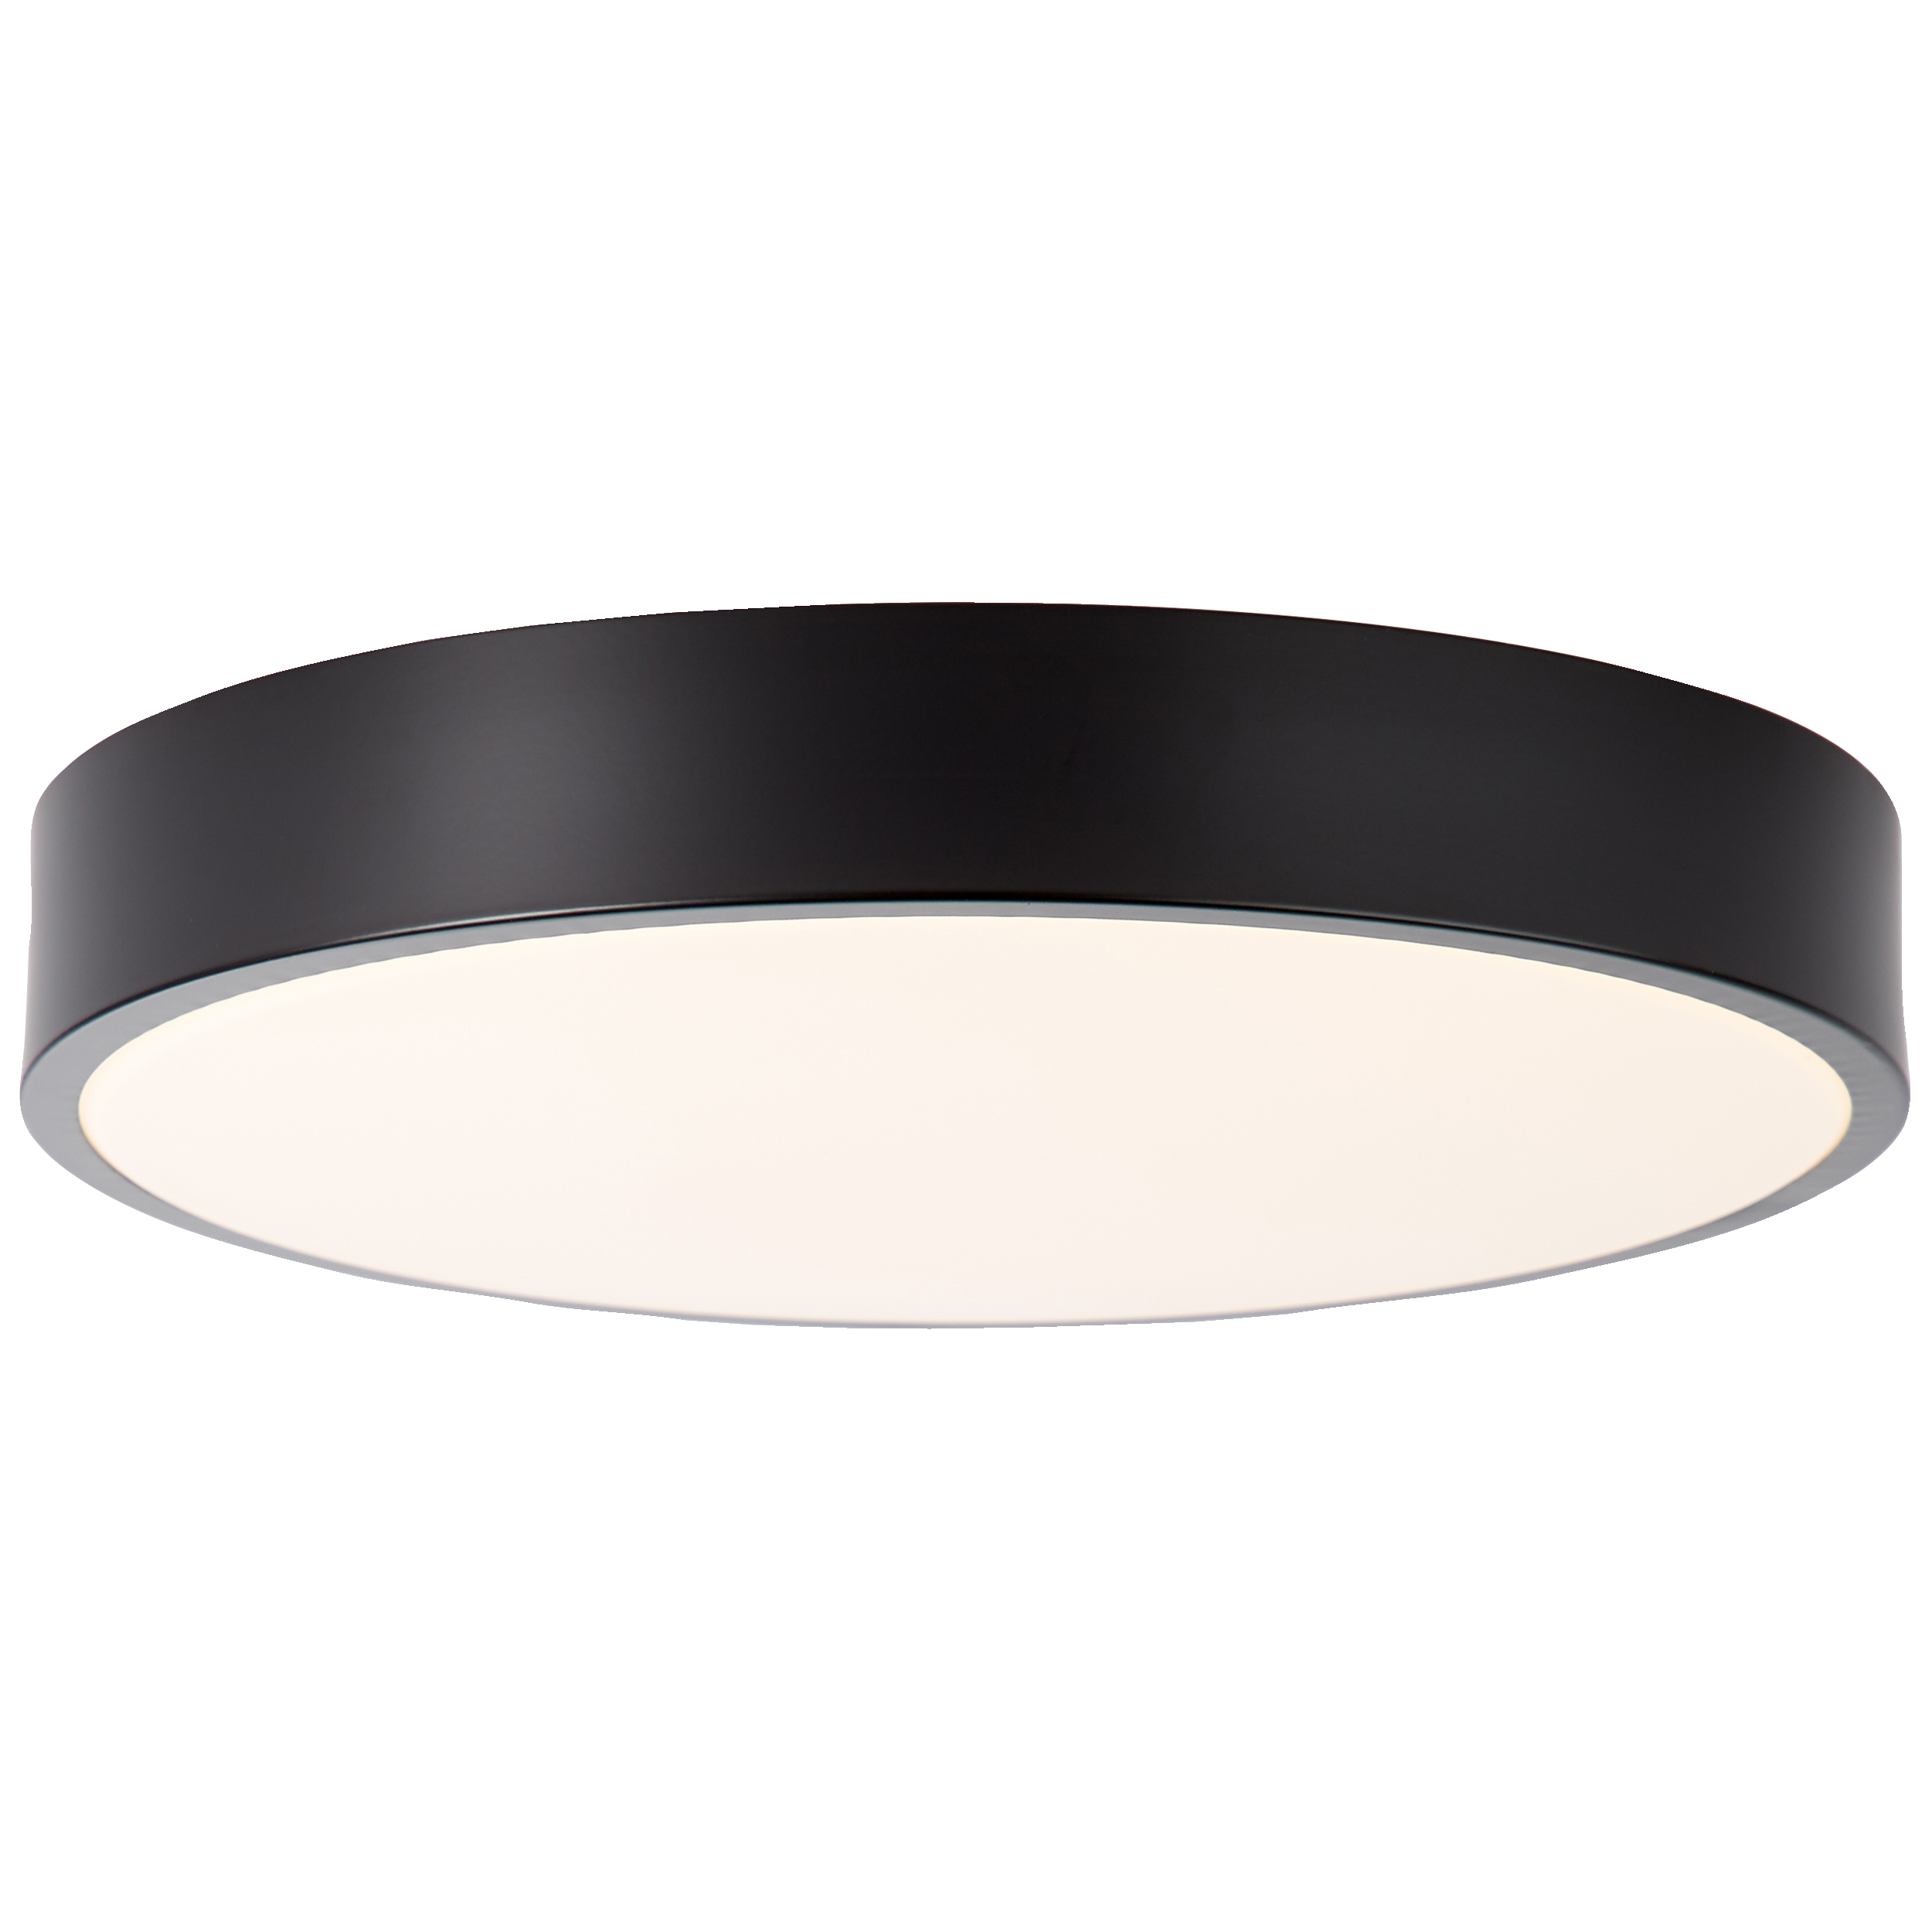 LED Deckenleuchte 33cm weiß/schwarz · GmbH Lightbox Licht & Leuchten